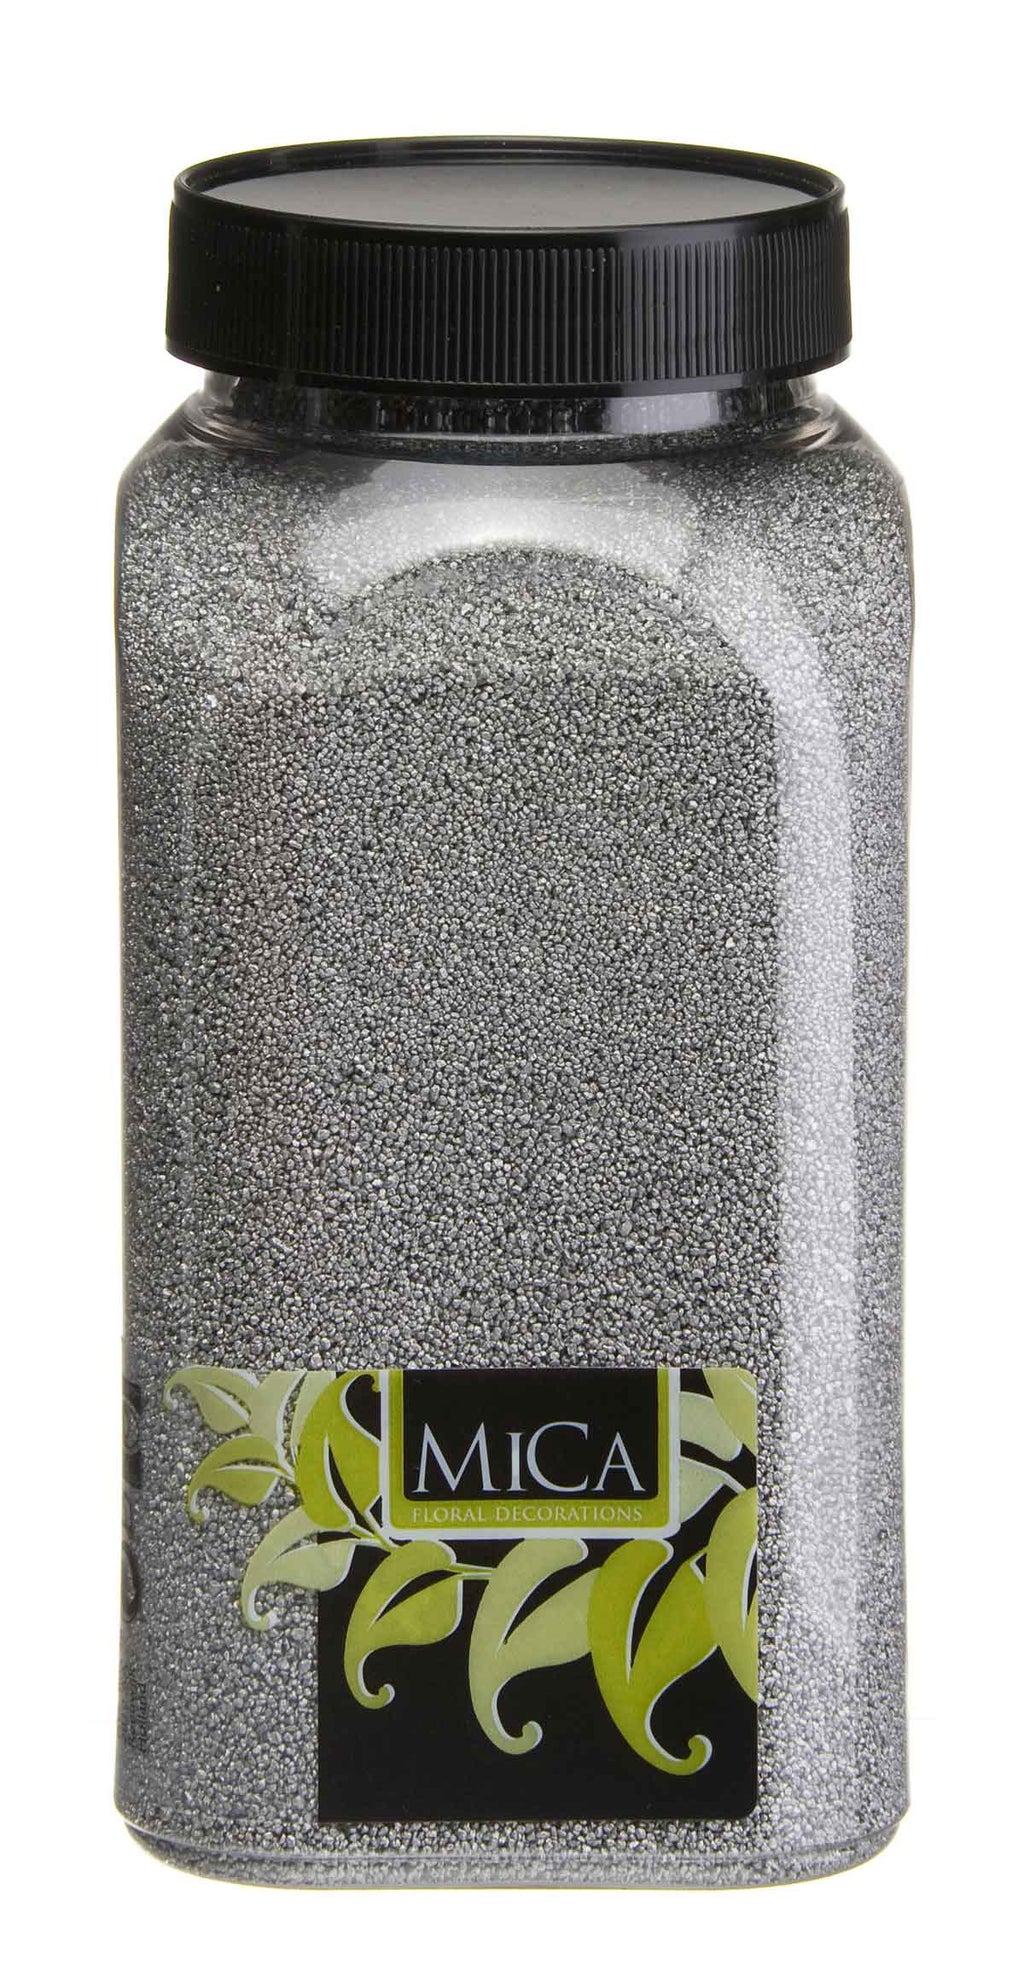 Gloed Alsjeblieft kijk kruising Mica zand zilver 1 kg van Mica Decorations | Sfeer voor jou